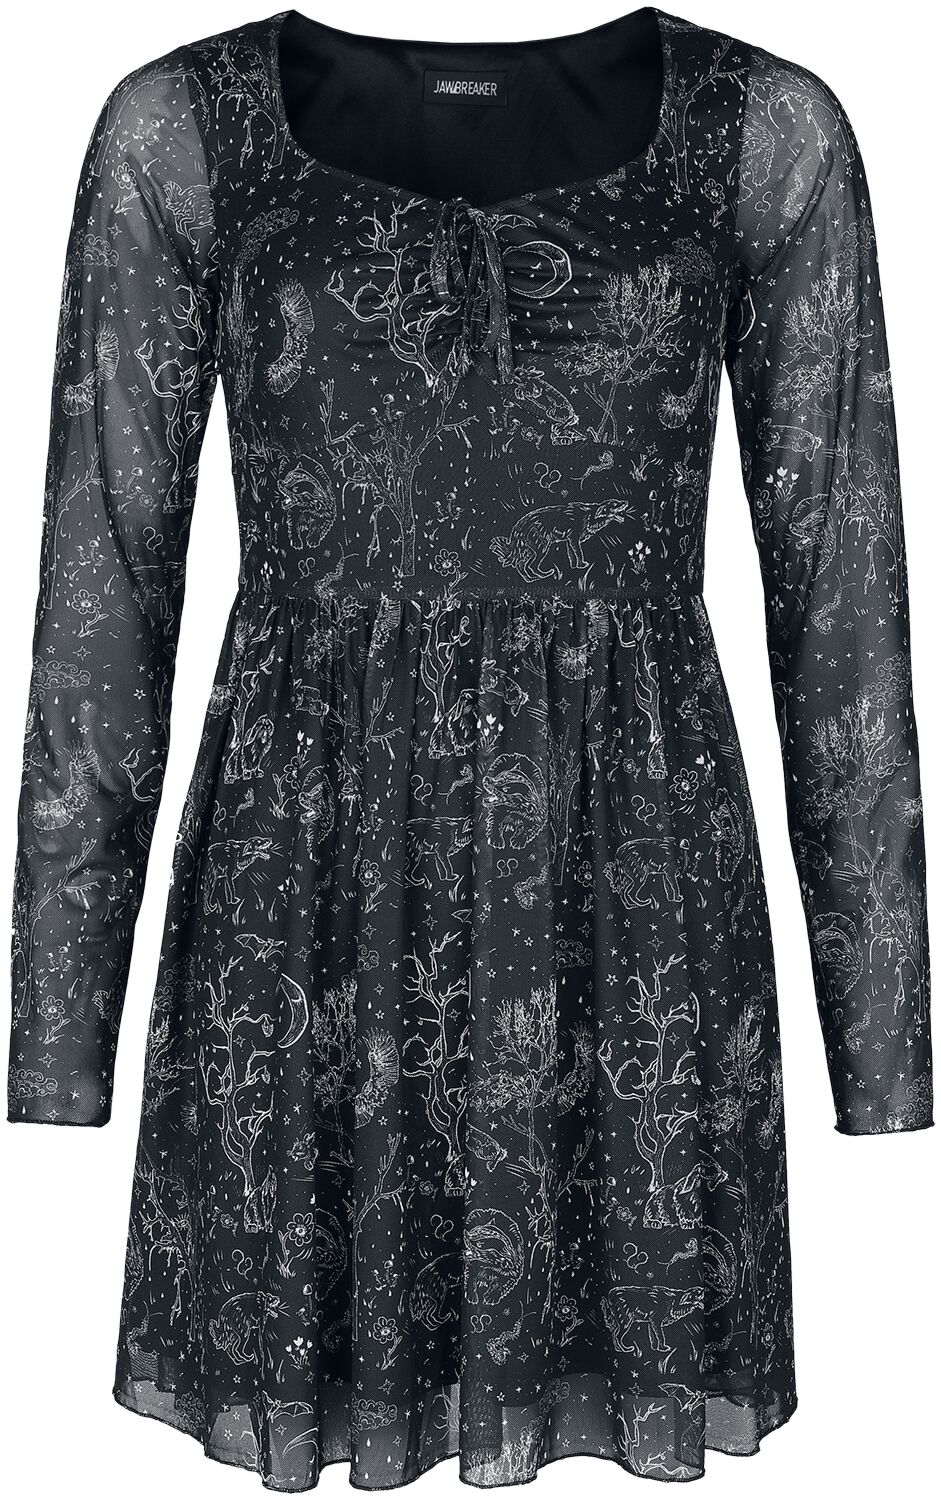 Robe courte Gothic de Jawbreaker - Night Forest Mesh Dress - XS à 4XL - pour Femme - noir/blanc